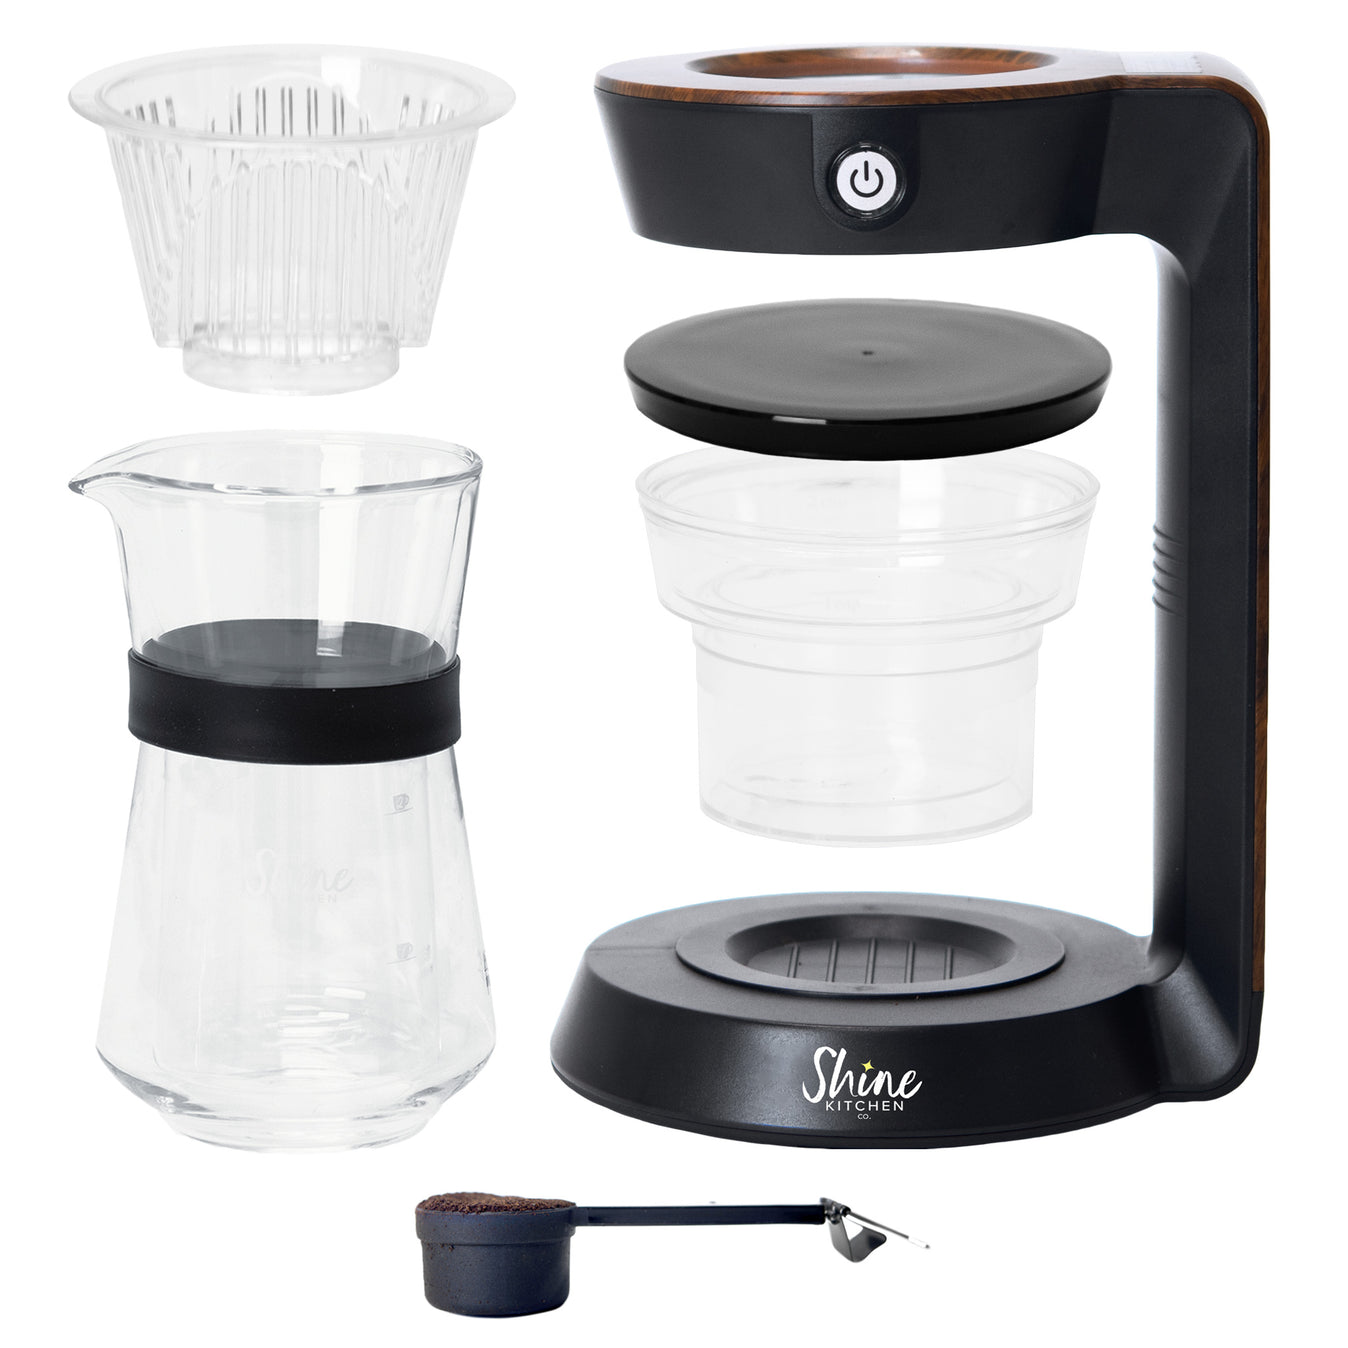 Shine Kitchen Co. Autopour Automatic Pour Over Coffee Machine Parts